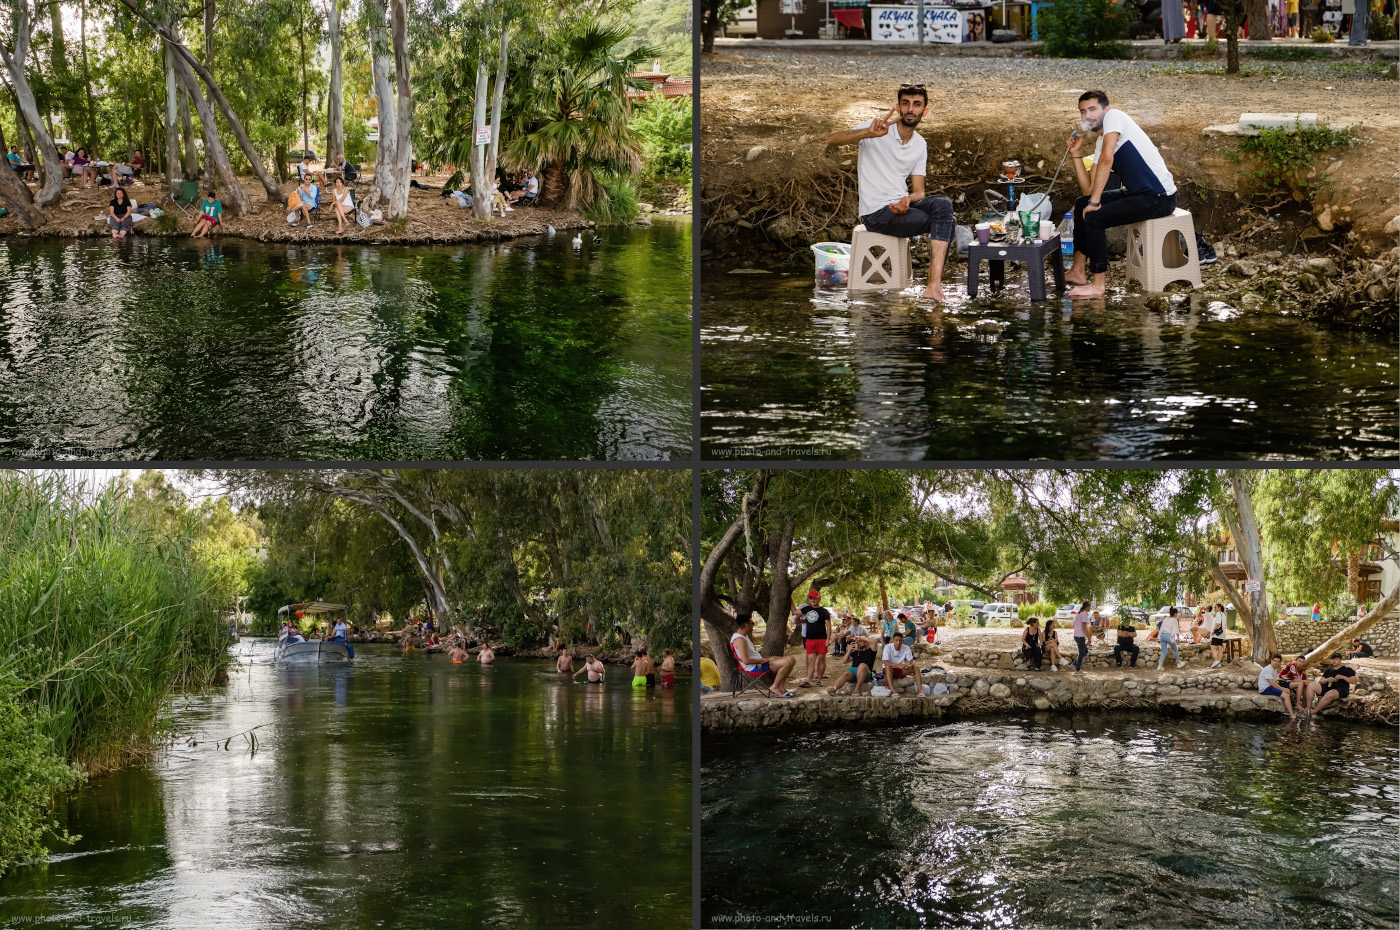 11. Отдыхая в Акьяке, туристы не только катаются на лодке по реке Азмак, но и устраивают пикники на ее тенистых берегах.